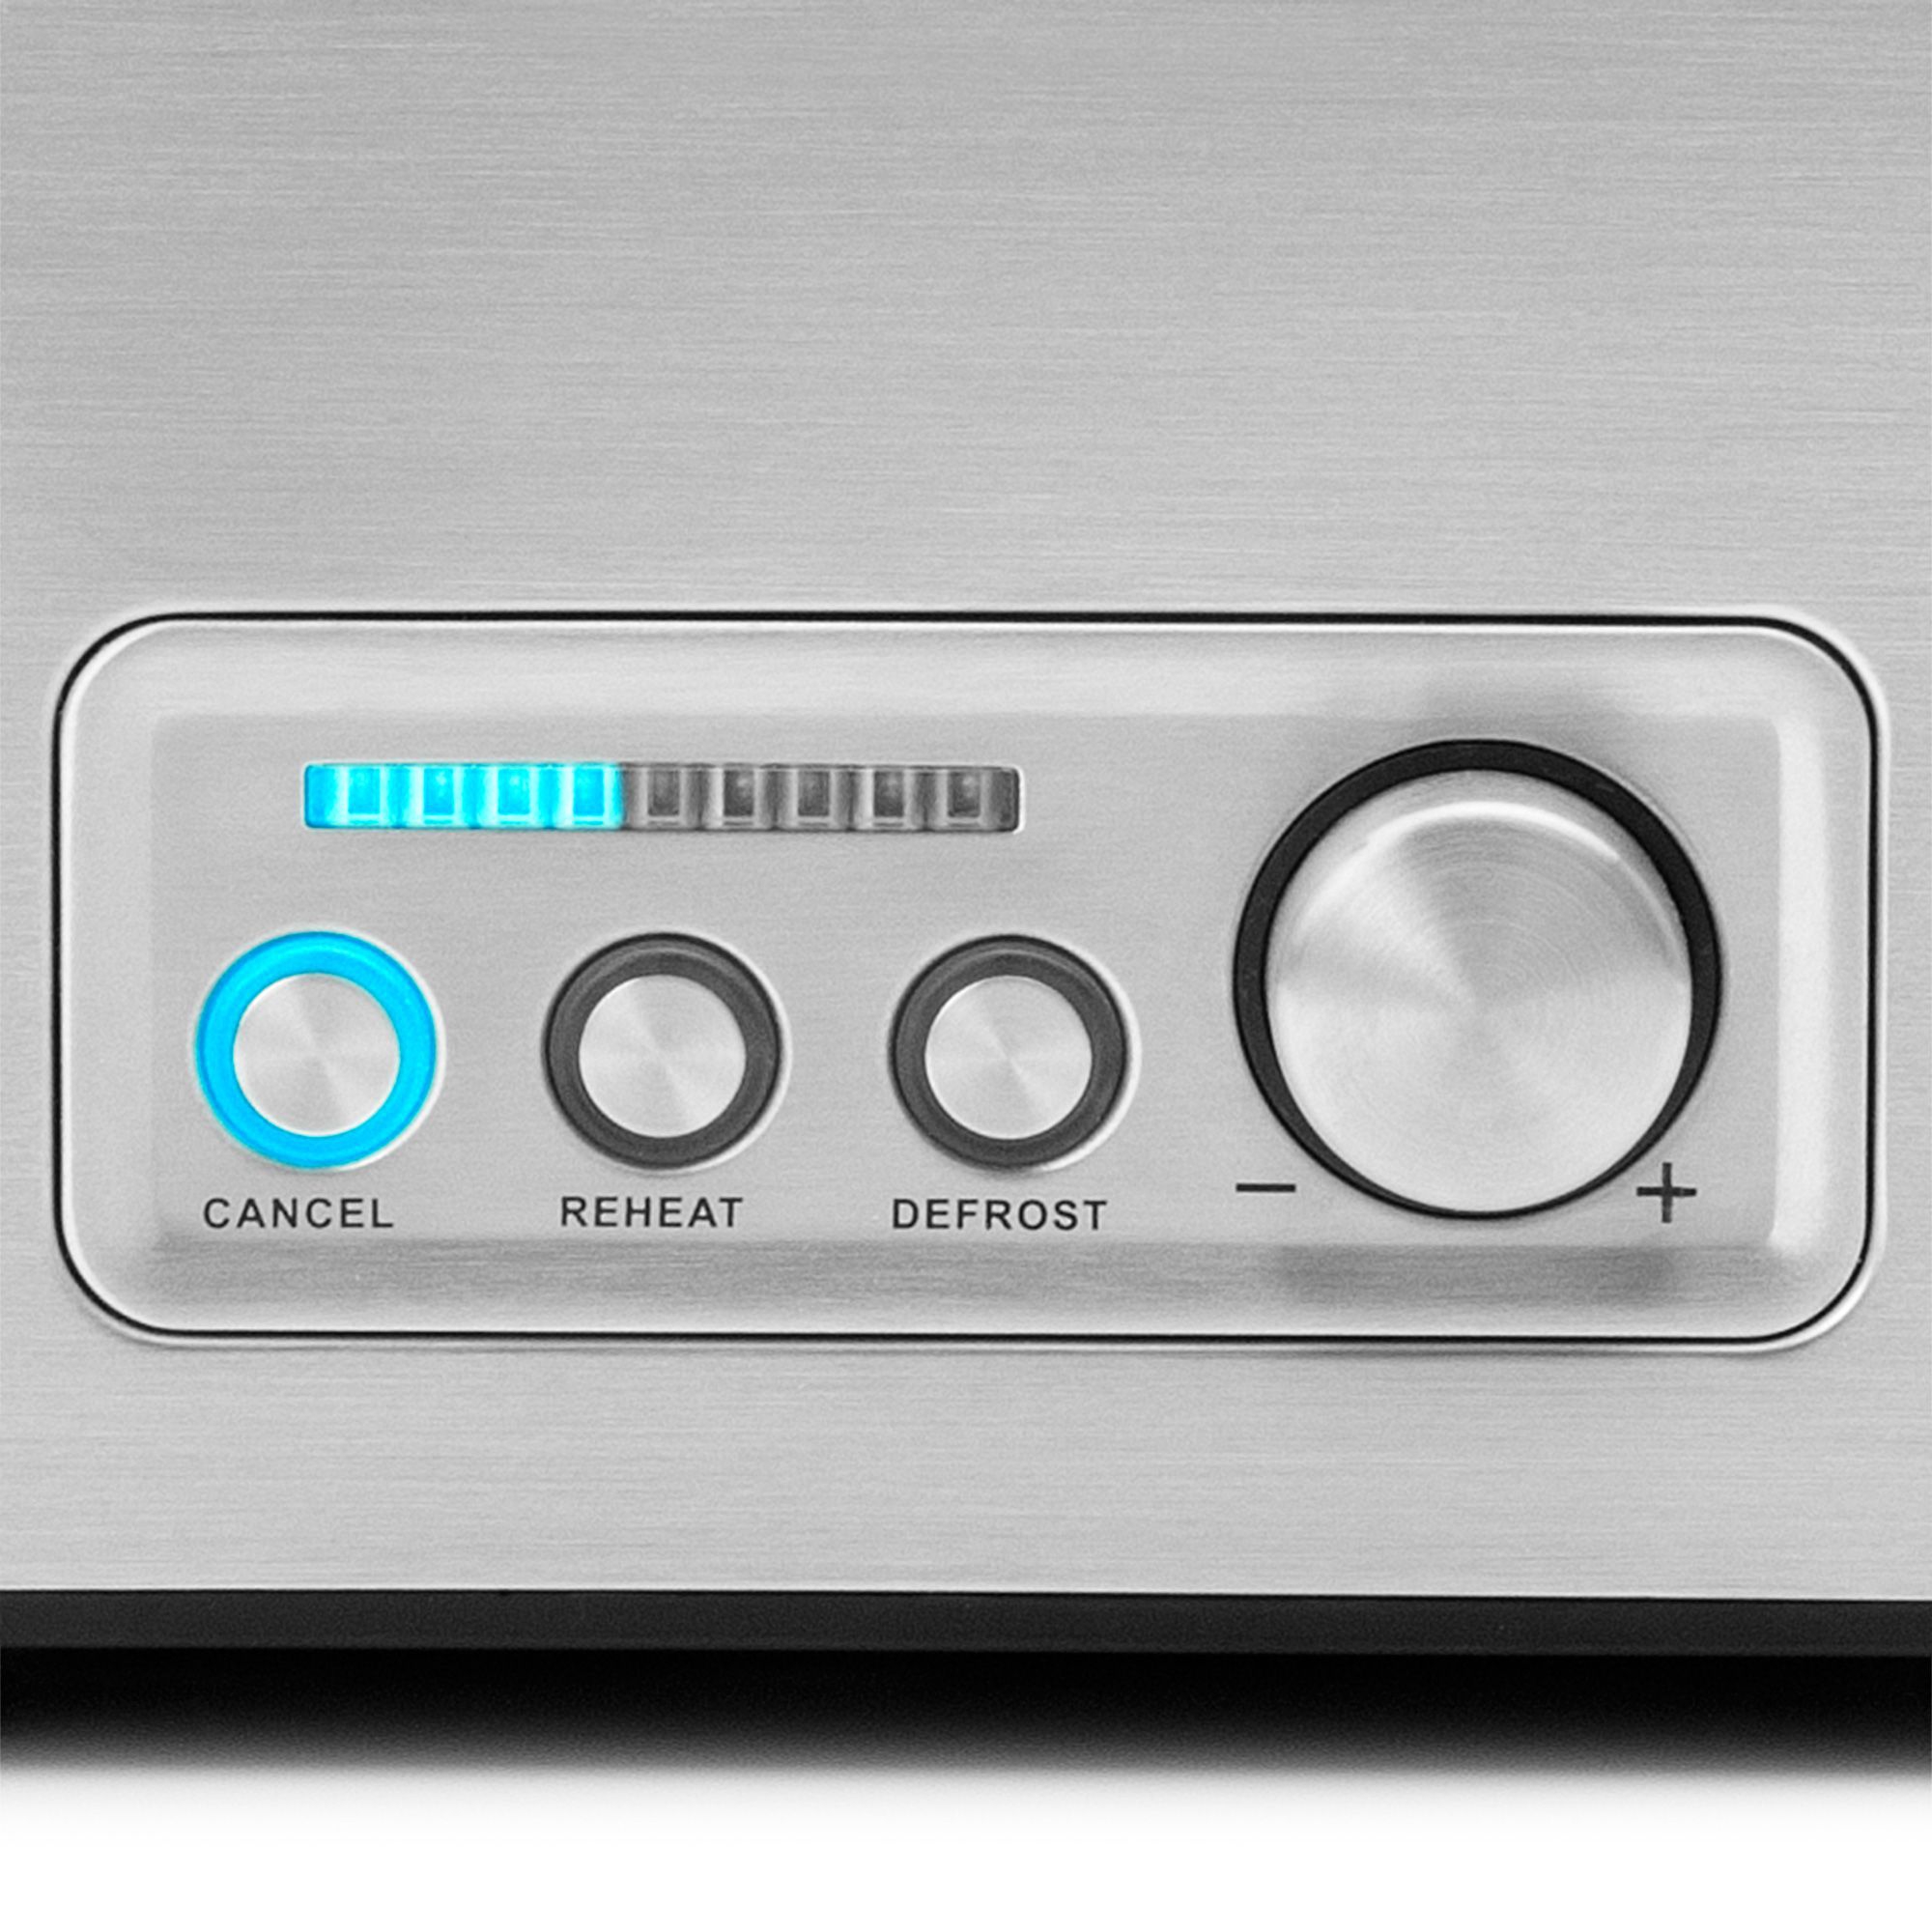 Gastroback -  Design Toaster Pro 2S